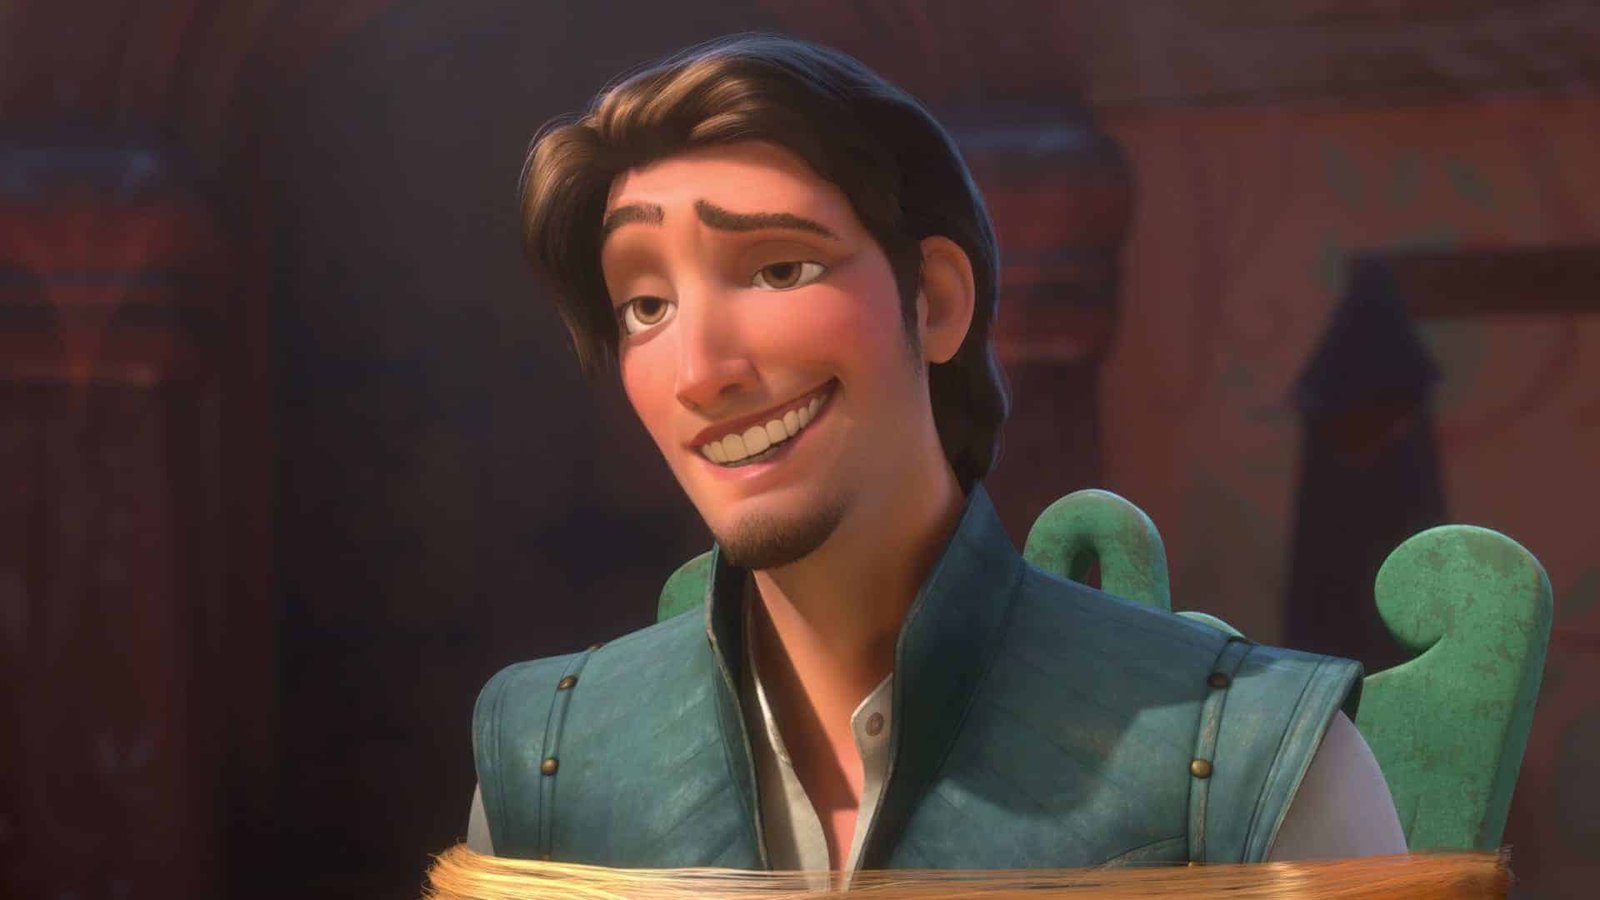 Personnage animé de Disney à l'expression souriante, vêtu d'un gilet vert et d'une chemise blanche, sur un fond coloré et chaleureusement éclairé évoquant une scène d'un film d'animation.